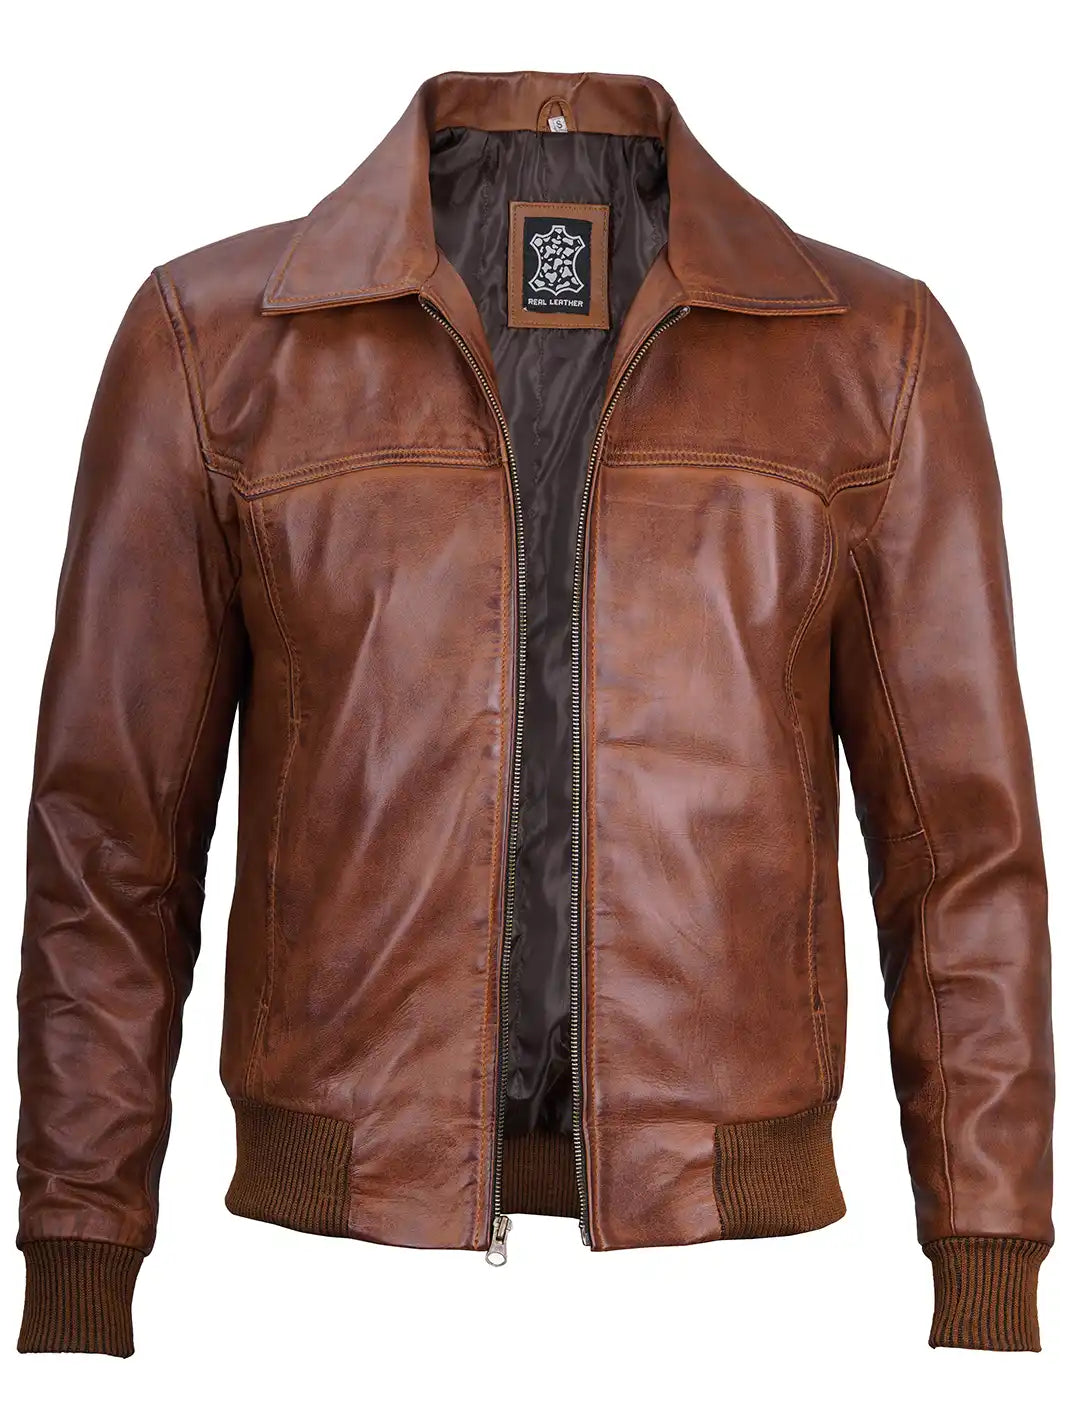 Mens cognac leather jacket